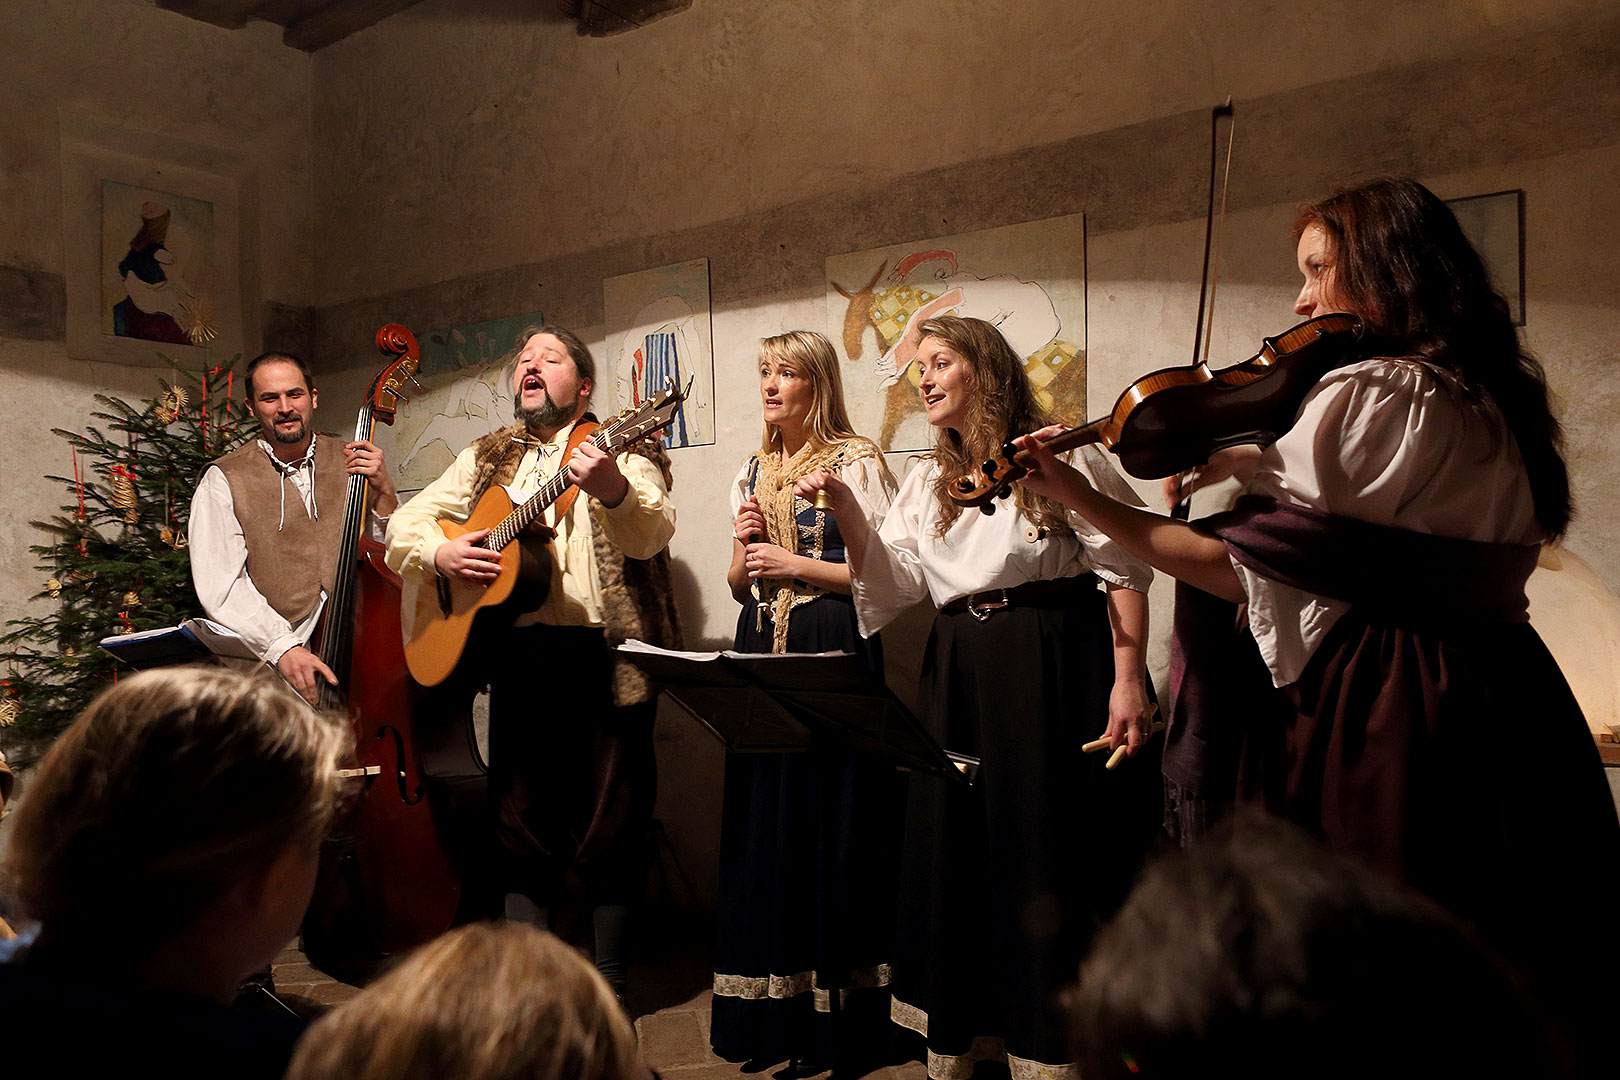 Kapka - Traditional Christmas concert of local folk band, 25.12.2013